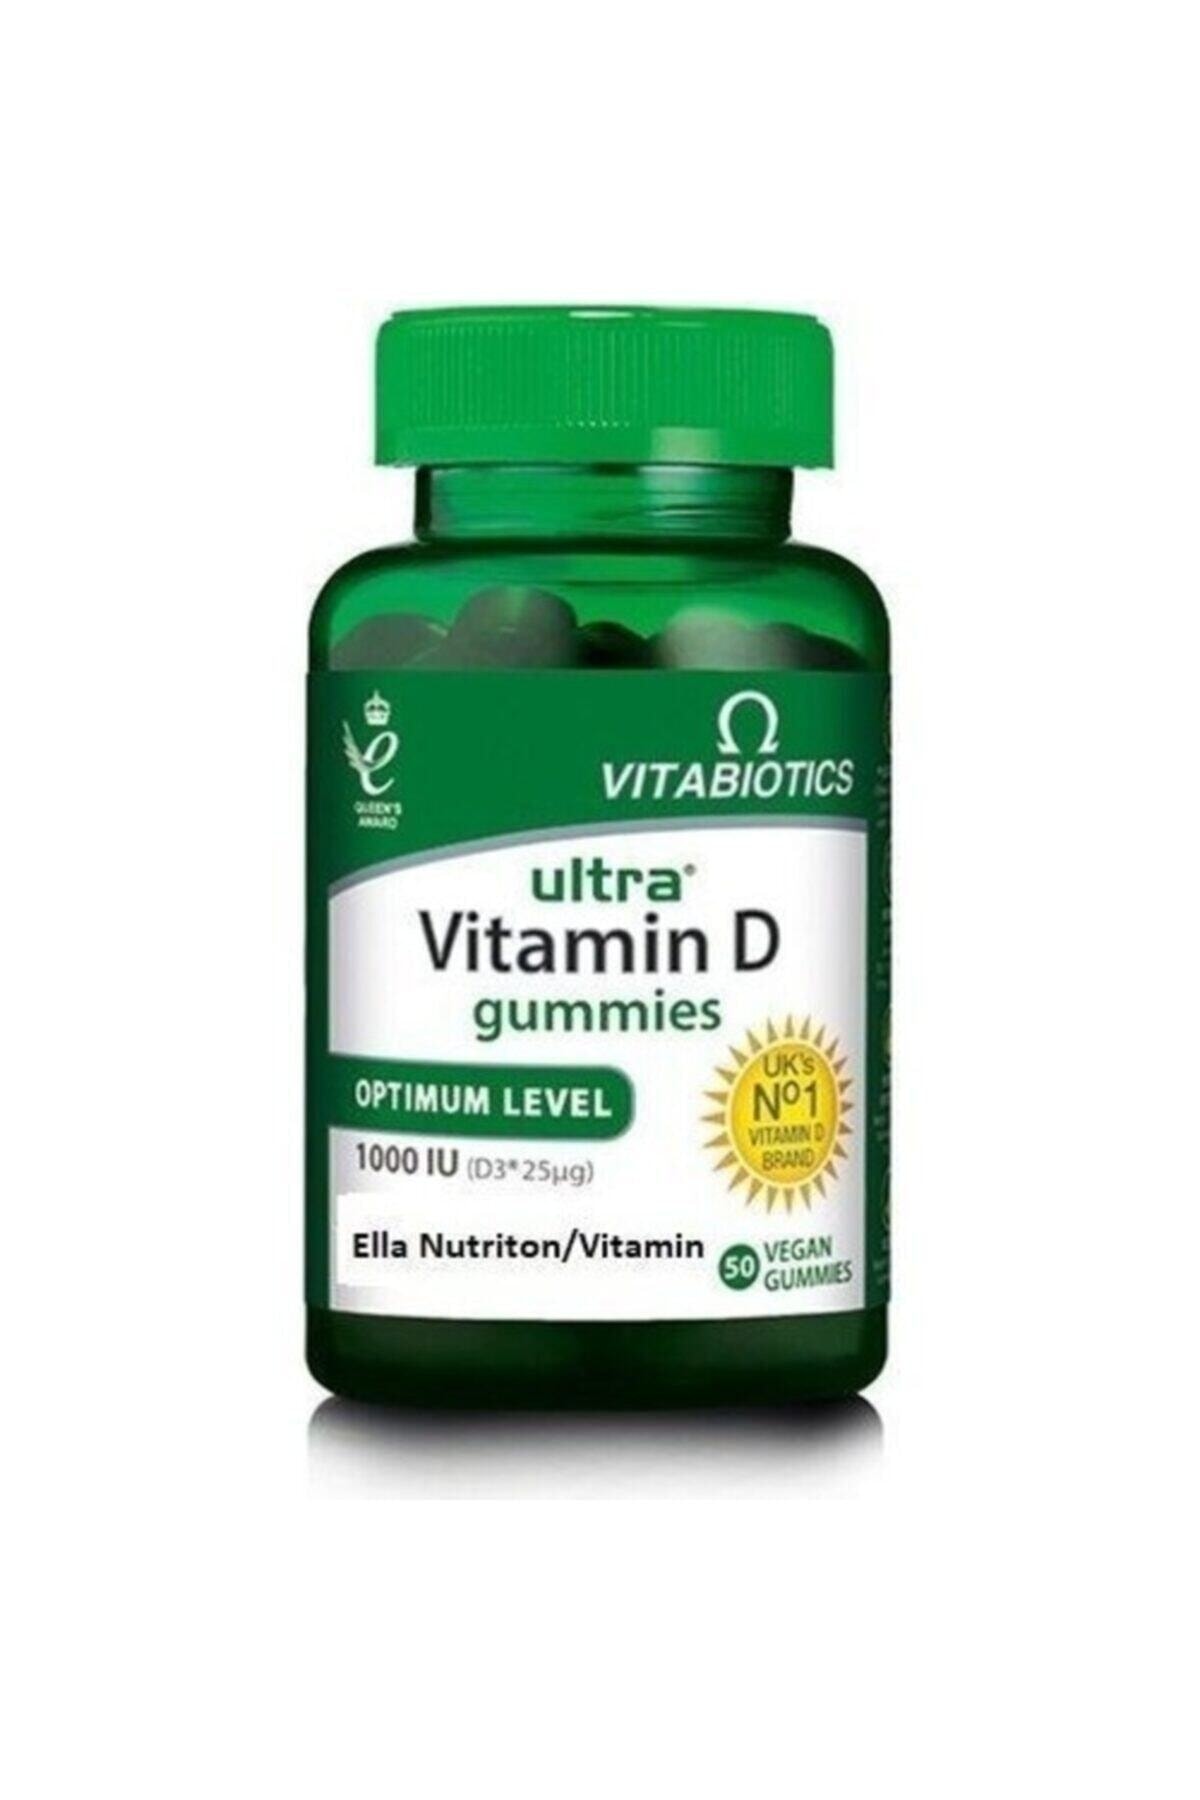 ULTRA Vitamin D Gummies 1000 Iu 50 Vegan Gummies